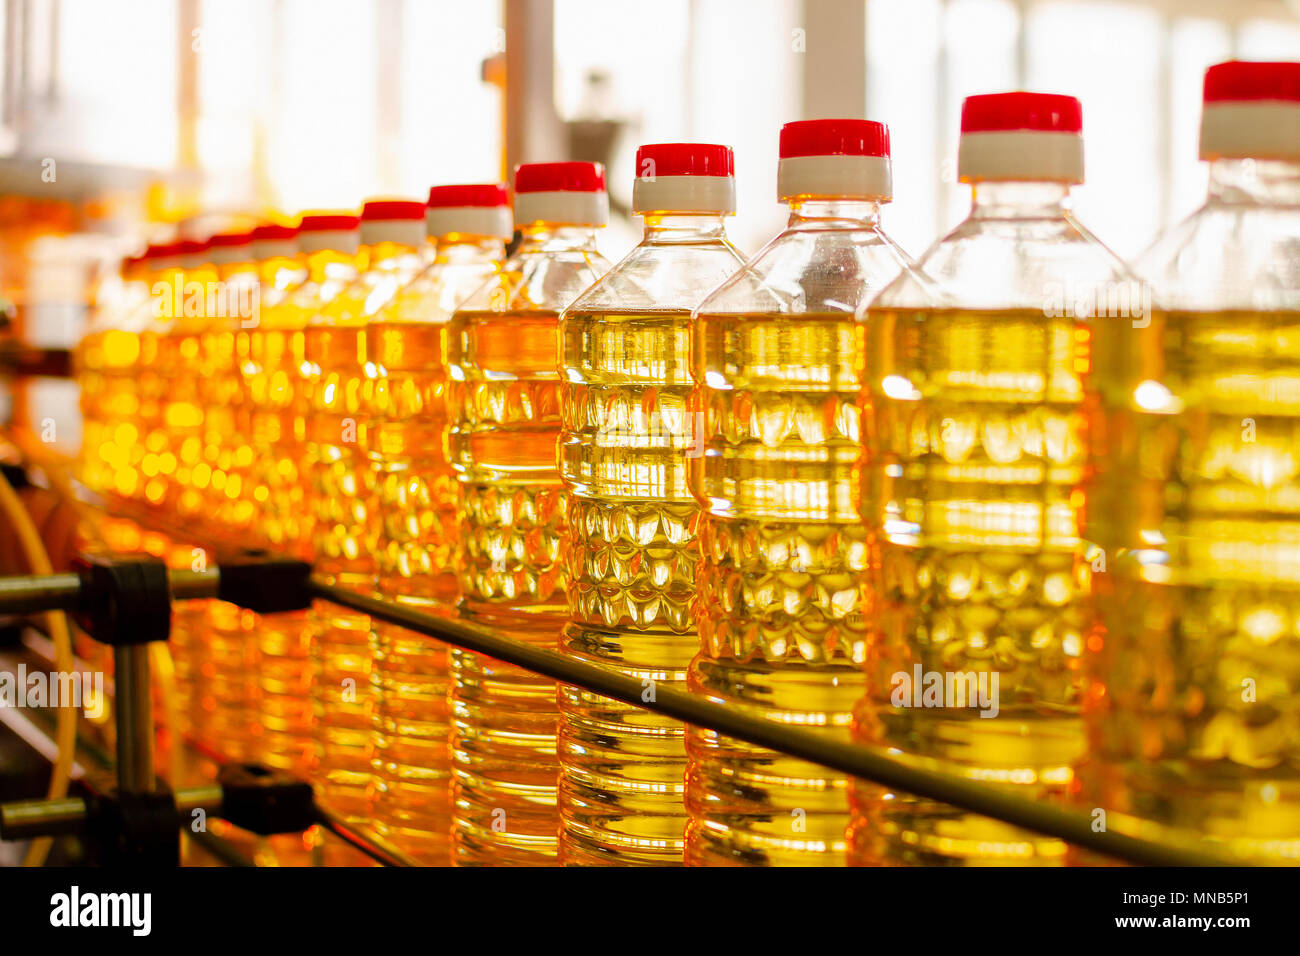 Sonnenblumenöl. Factory Line der Herstellung und Abfüllung von raffiniertem Öl aus Sonnenblumenkernen. Factory Fördertechnik in der Lebensmittelindustrie. Stockfoto